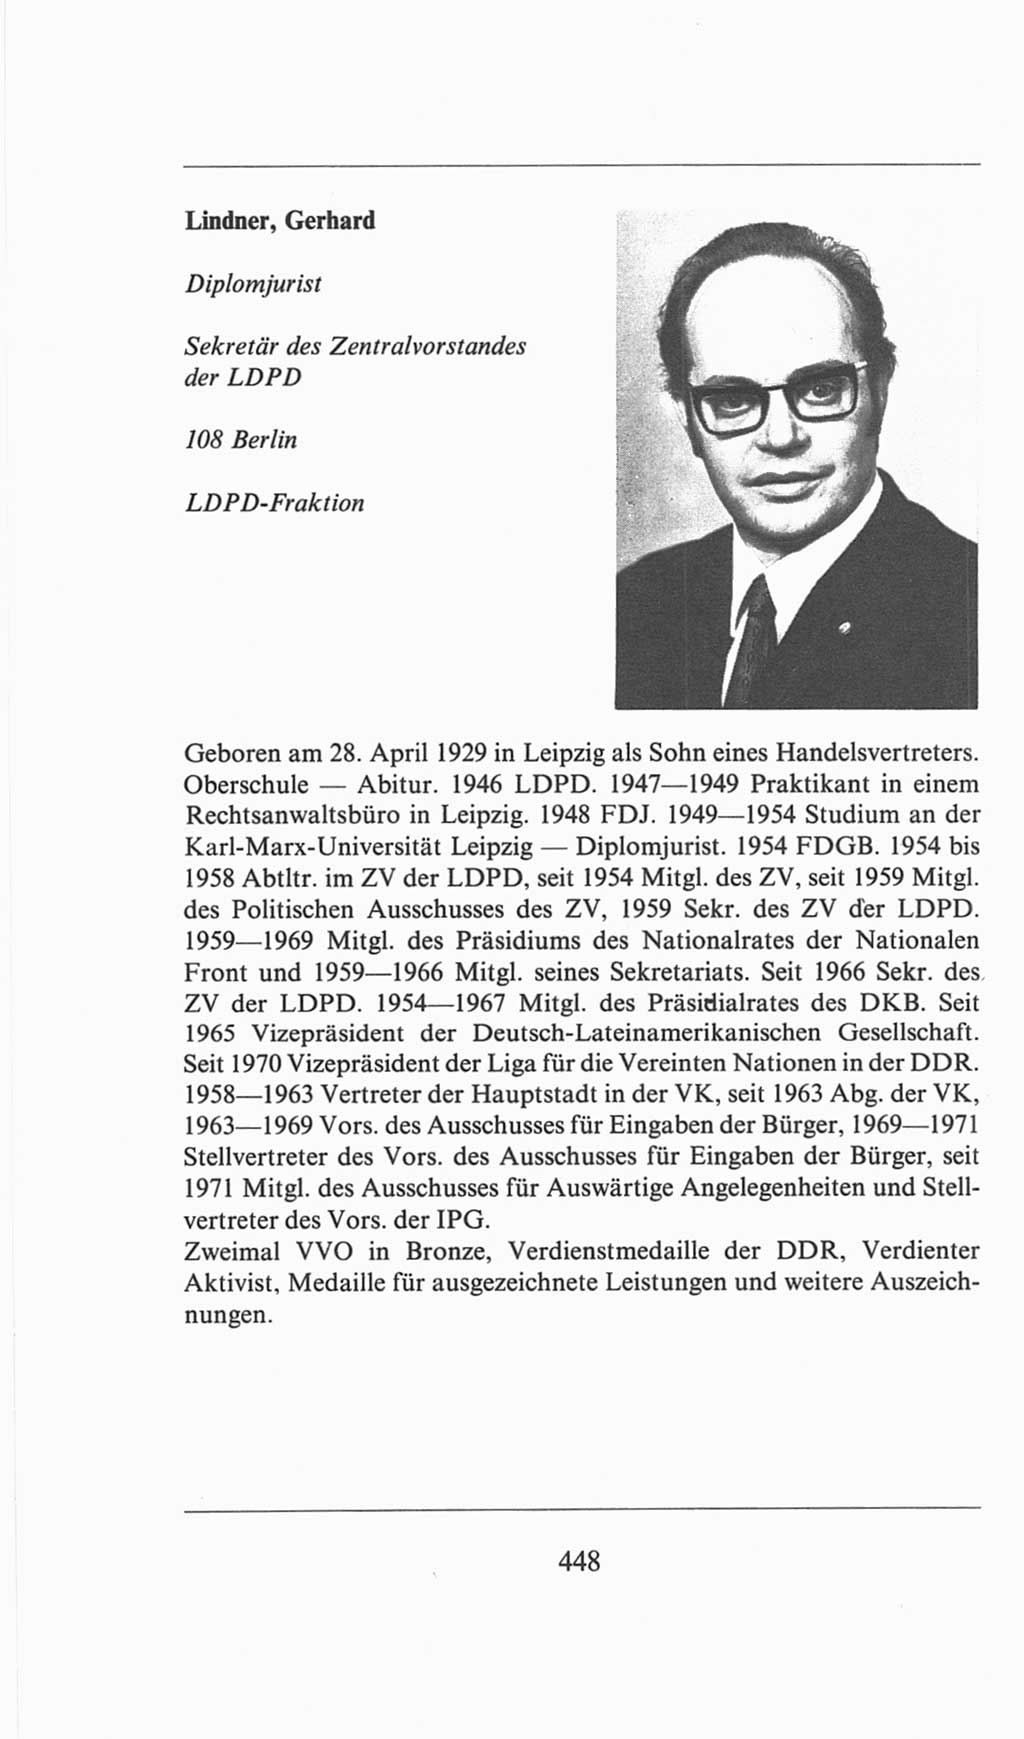 Volkskammer (VK) der Deutschen Demokratischen Republik (DDR), 6. Wahlperiode 1971-1976, Seite 448 (VK. DDR 6. WP. 1971-1976, S. 448)